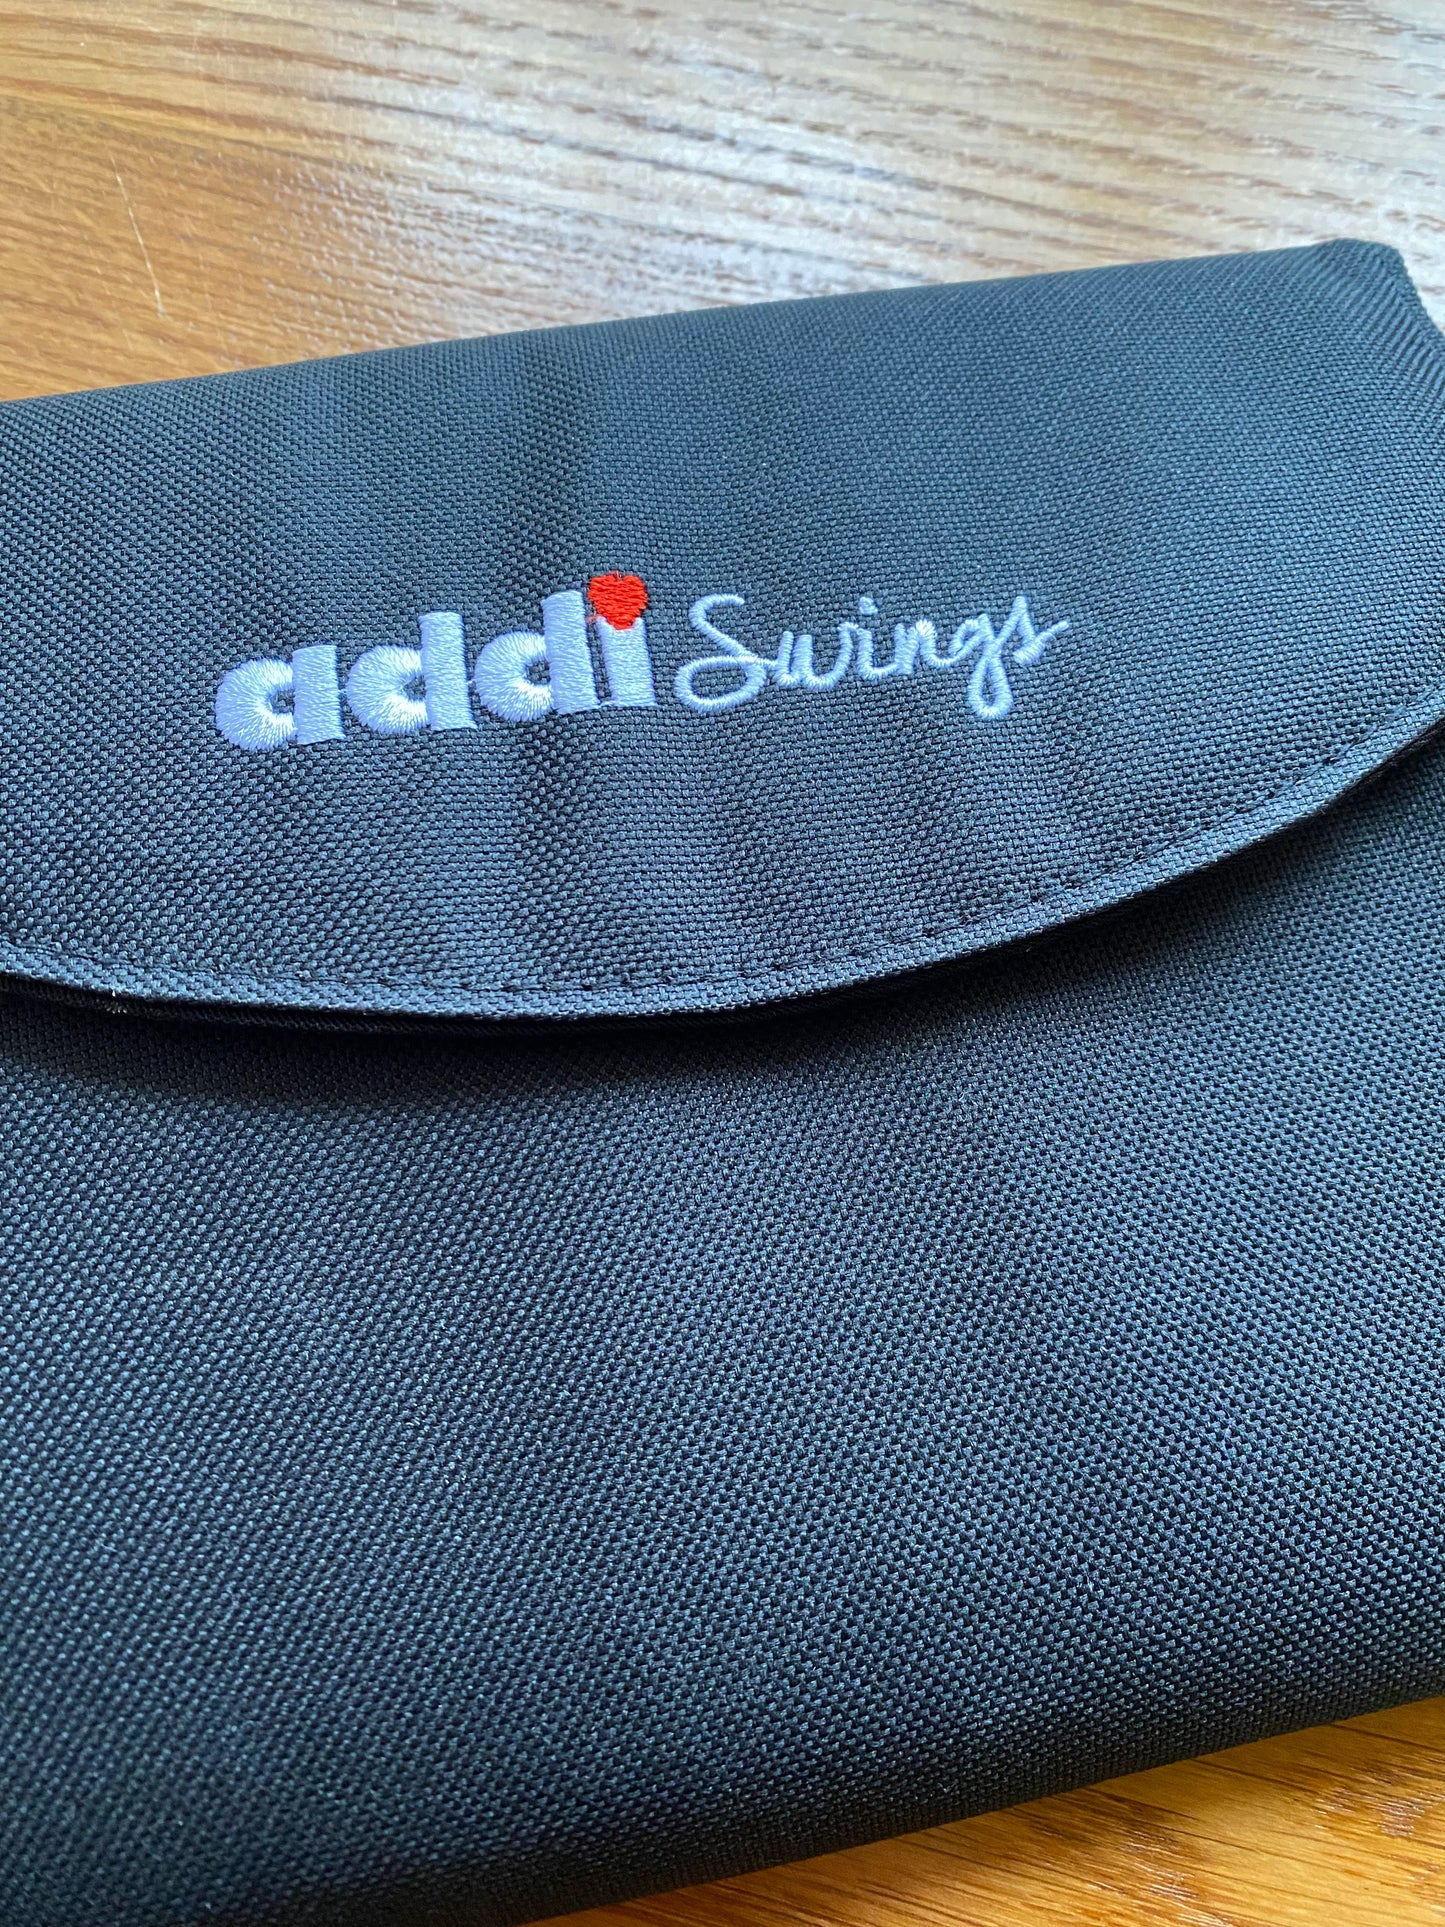 Addi Swings Set